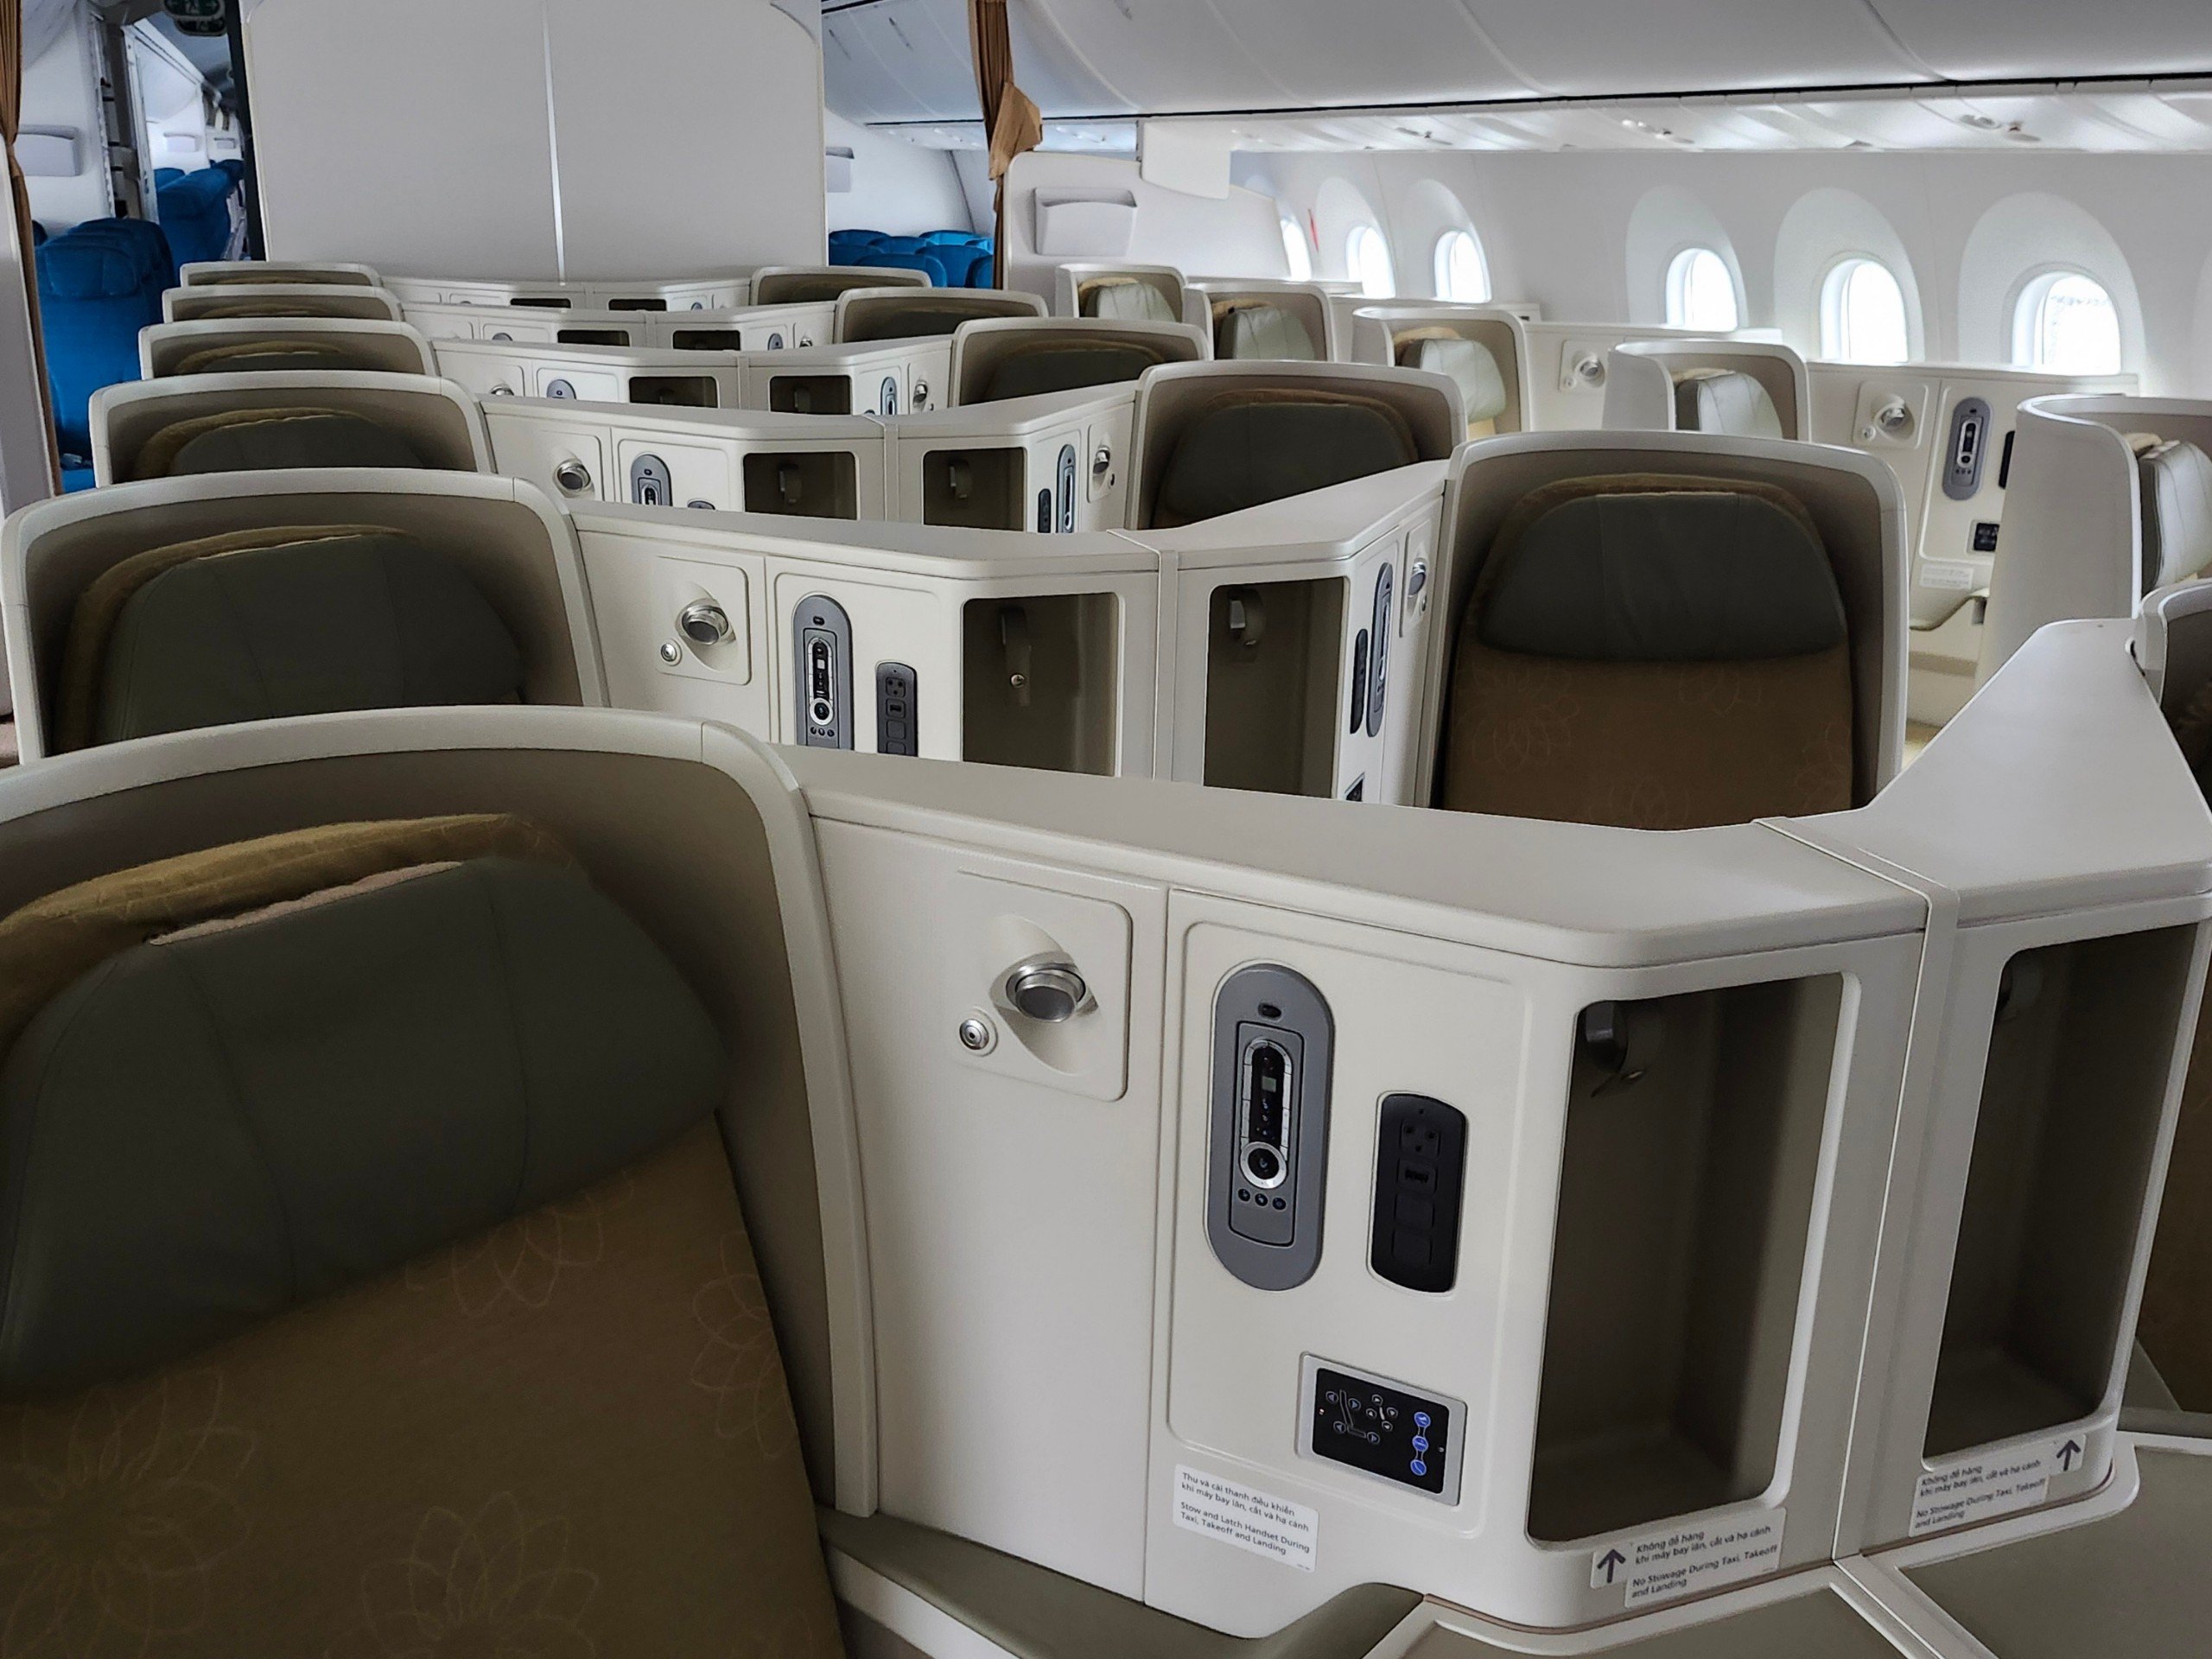 Khoang Thương gia của Boeing 787-10 Dreamliner có ghế ngồi được thiết kế so le hình xương cá tạo cho hành khách không gian rộng rãi và riêng tư, có thể ngả phẳng hoàn toàn. Những tiện ích bổ sung như màn hình cá nhân với hàng trăm chương trình giải trí đa dạng được cập nhật thường xuyên, đèn đọc sách, cổng USB tích hợp sẵn trên ghế, chỗ để chân, ngăn hành lý lớn hơn… cũng là những ưu điểm được hành khách đánh giá cao